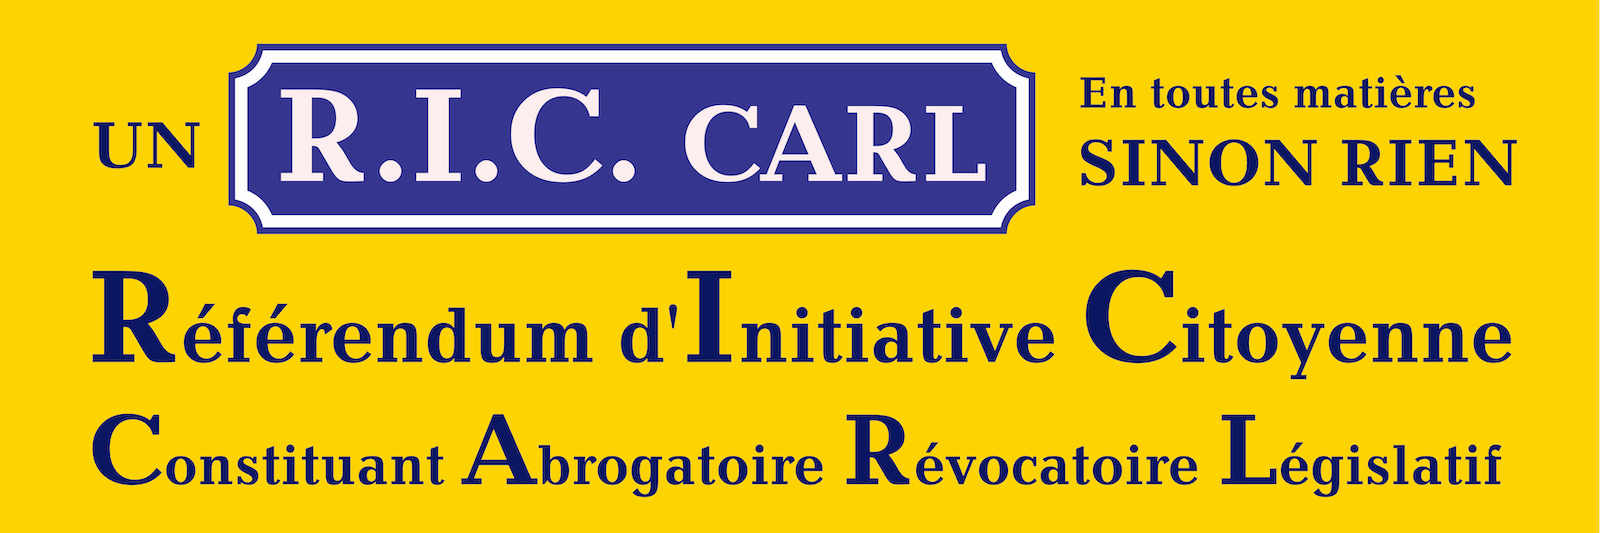 Affiche inspirée par publicité Ricard RIC CARL Référendum d'Initiative Citoyenne Constituant Abrogatoire Révocatoire Législatif